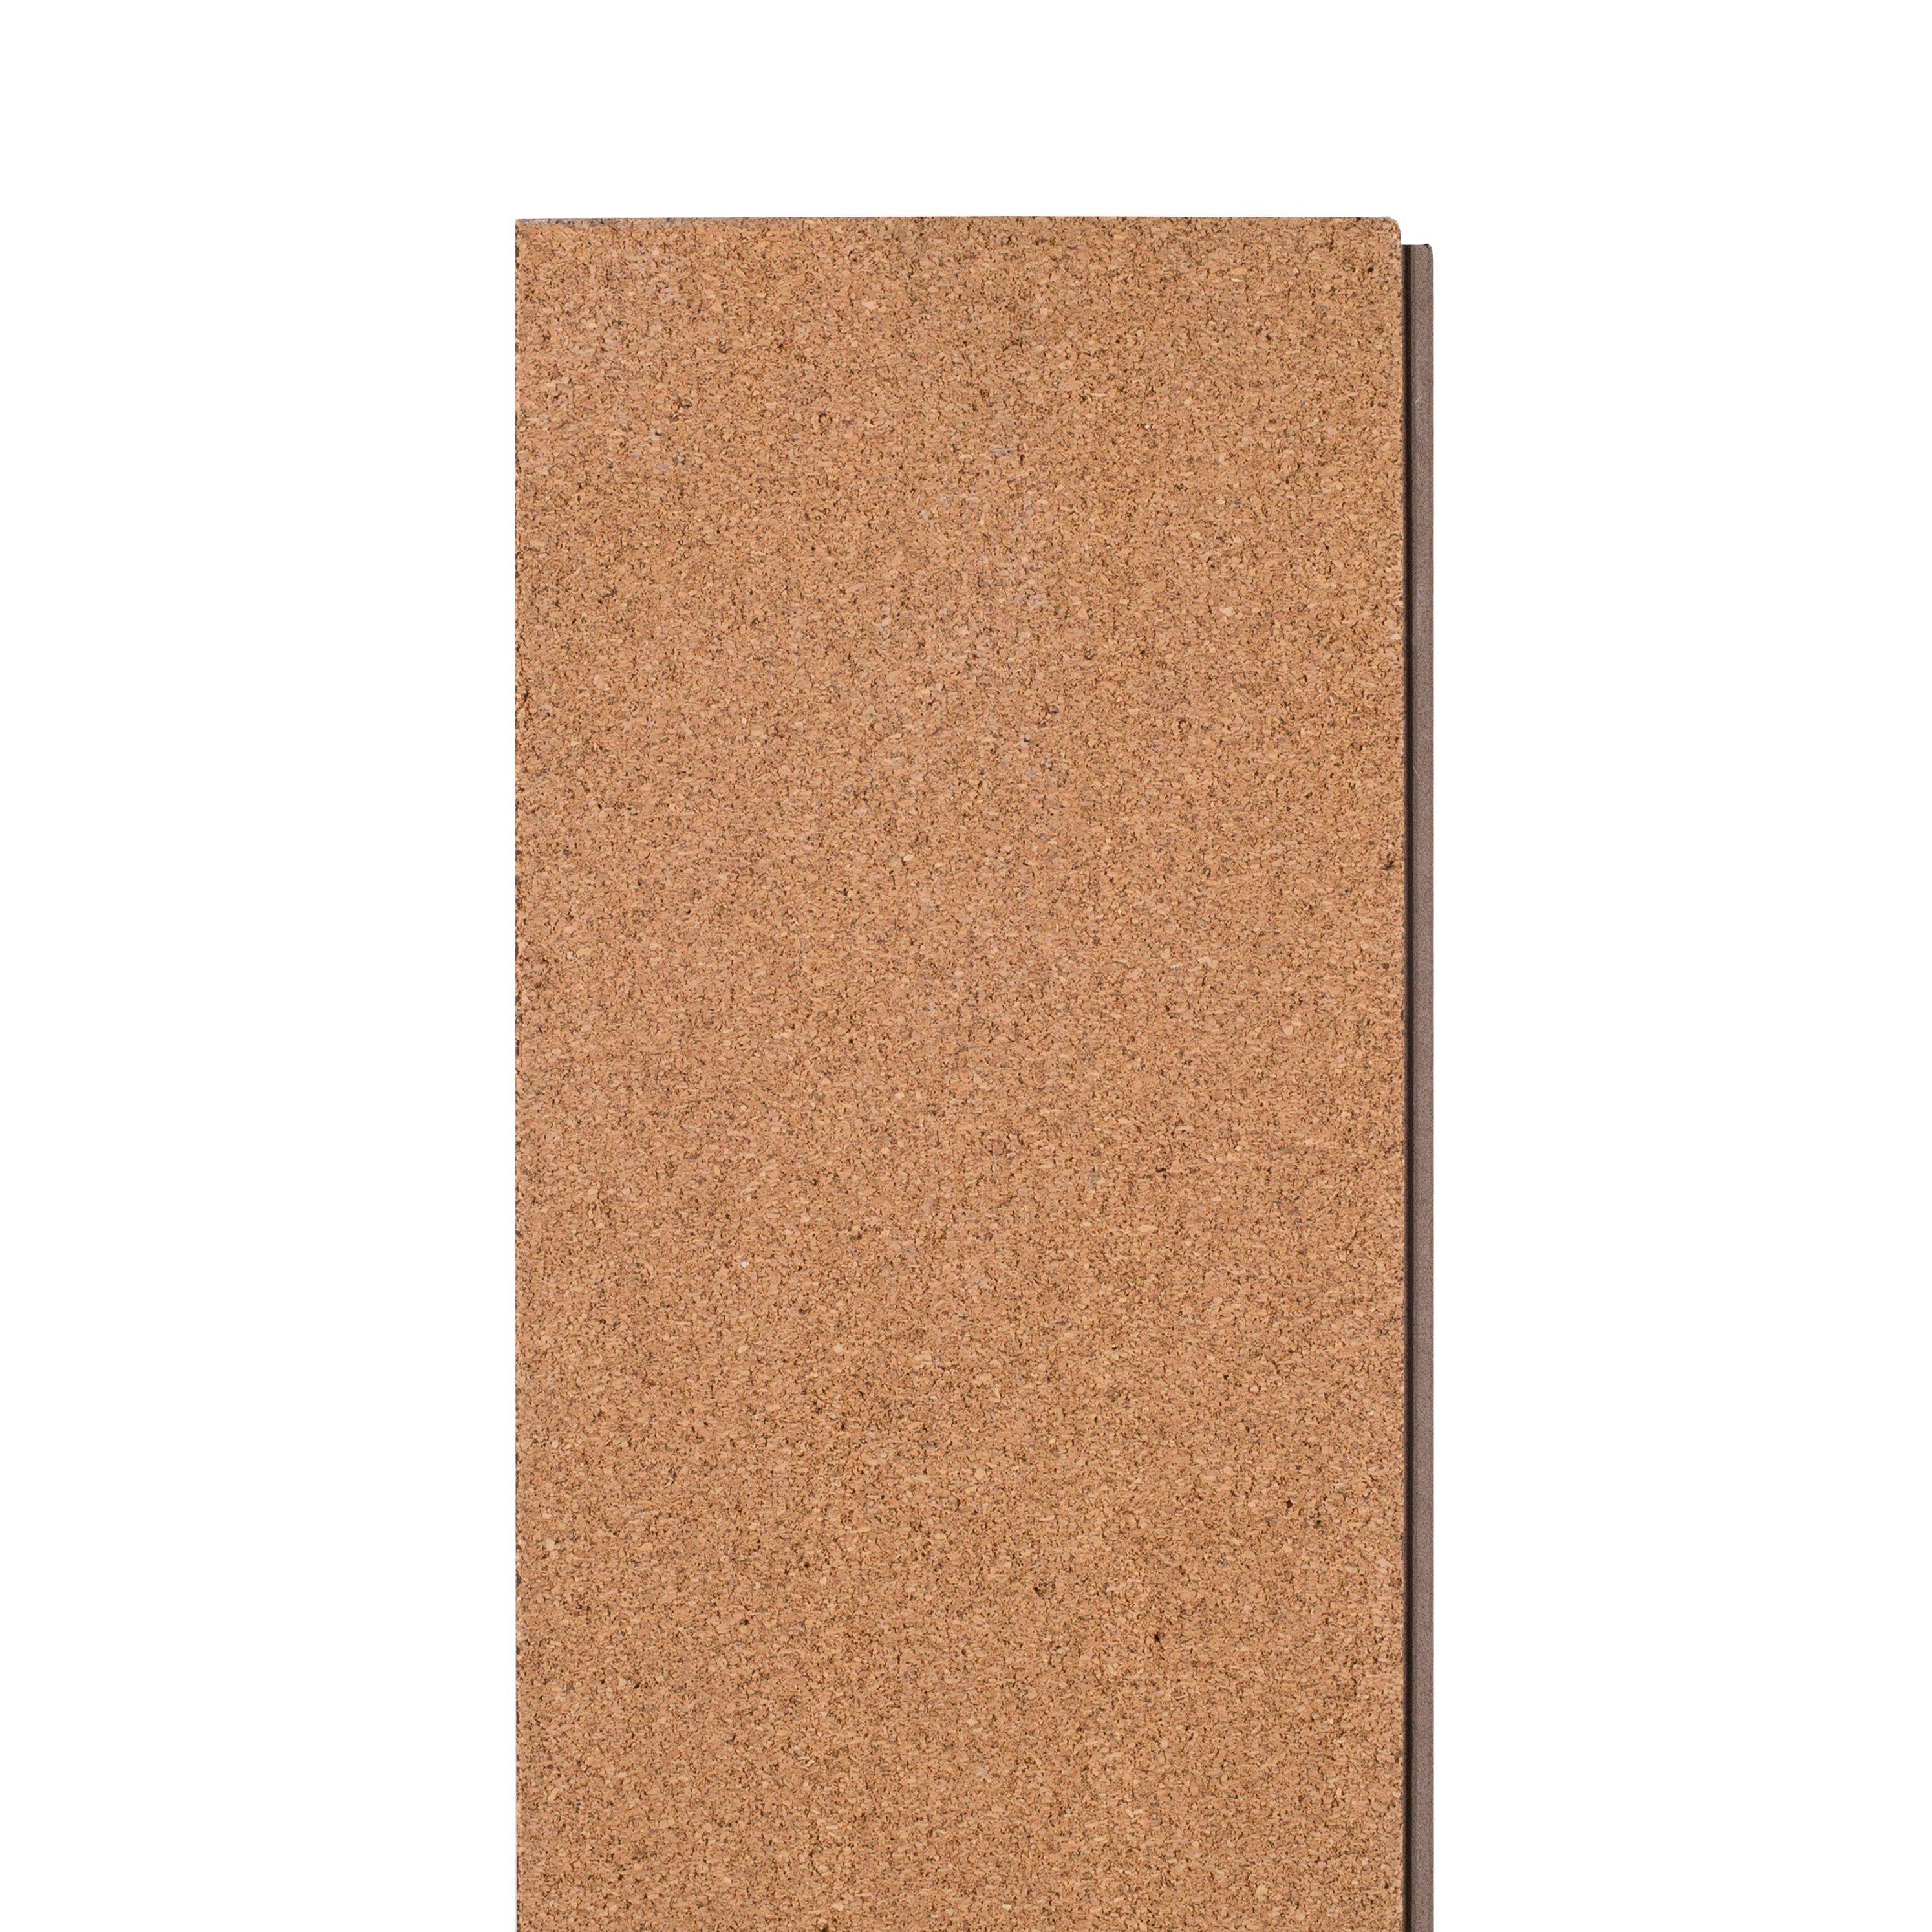 Spalted Oak Rigid Core Luxury Vinyl Plank - Cork Back